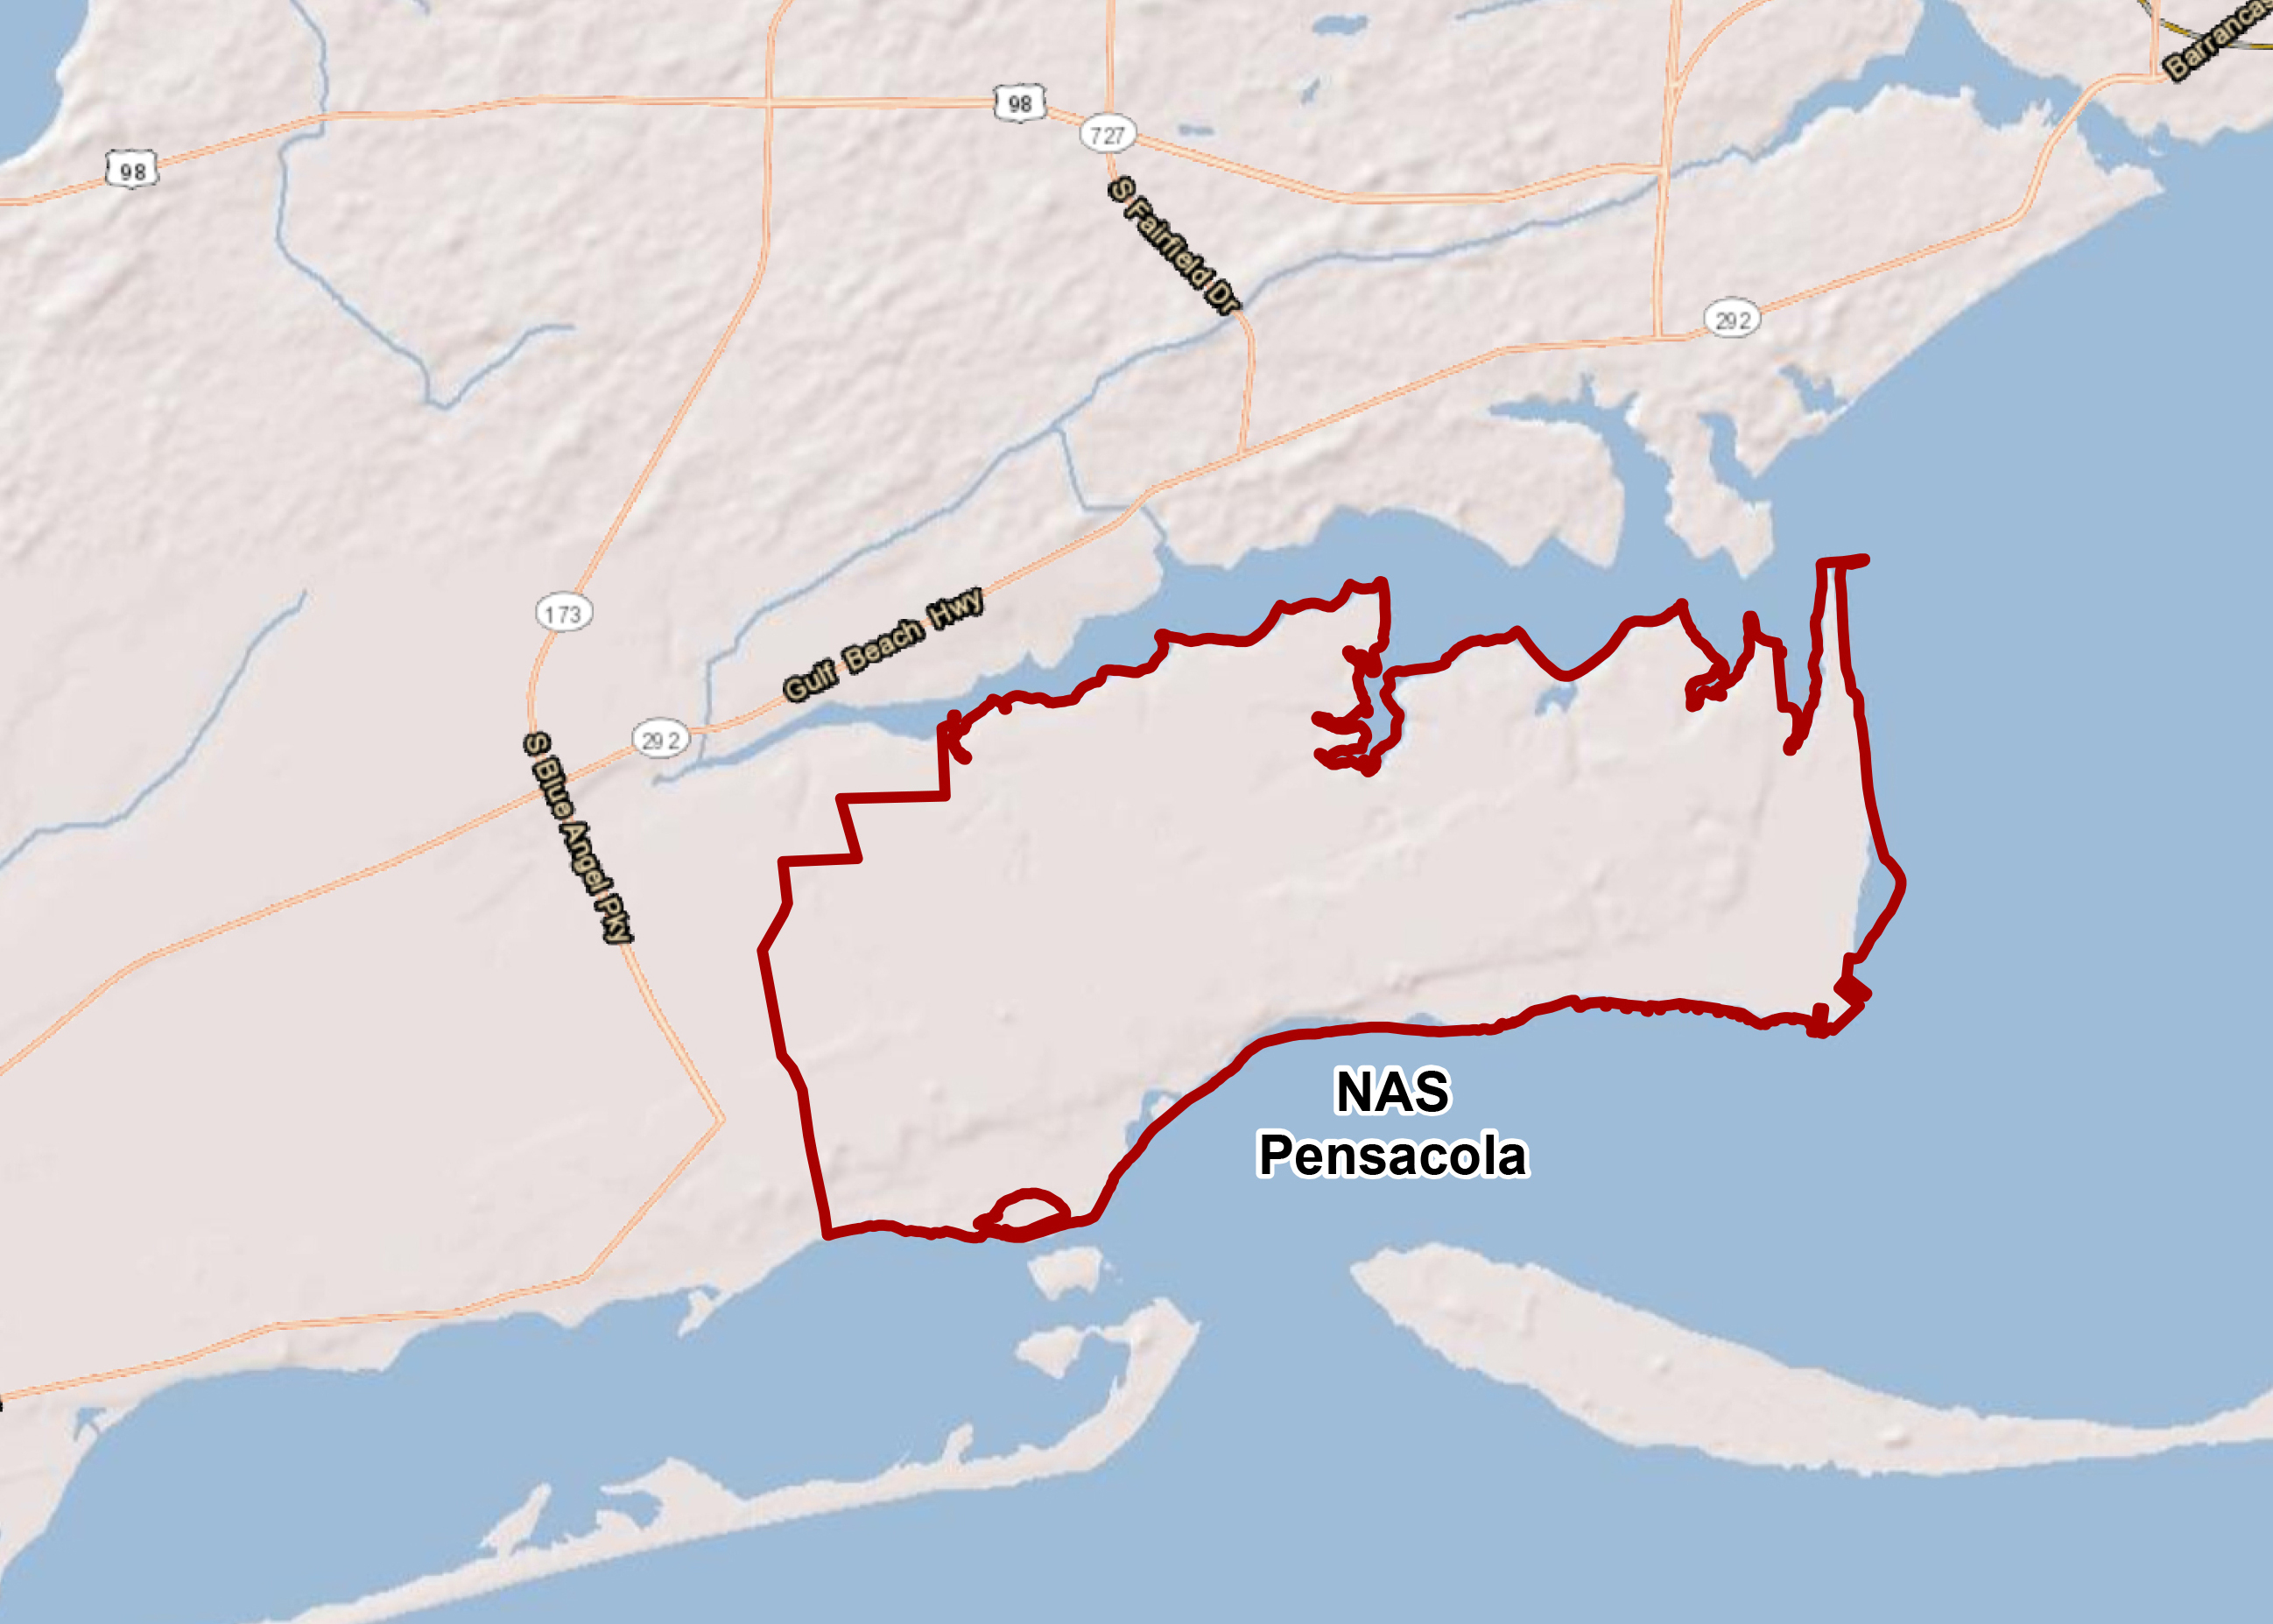 Naval Air Station Pensacola - Florida Navy Bases Map